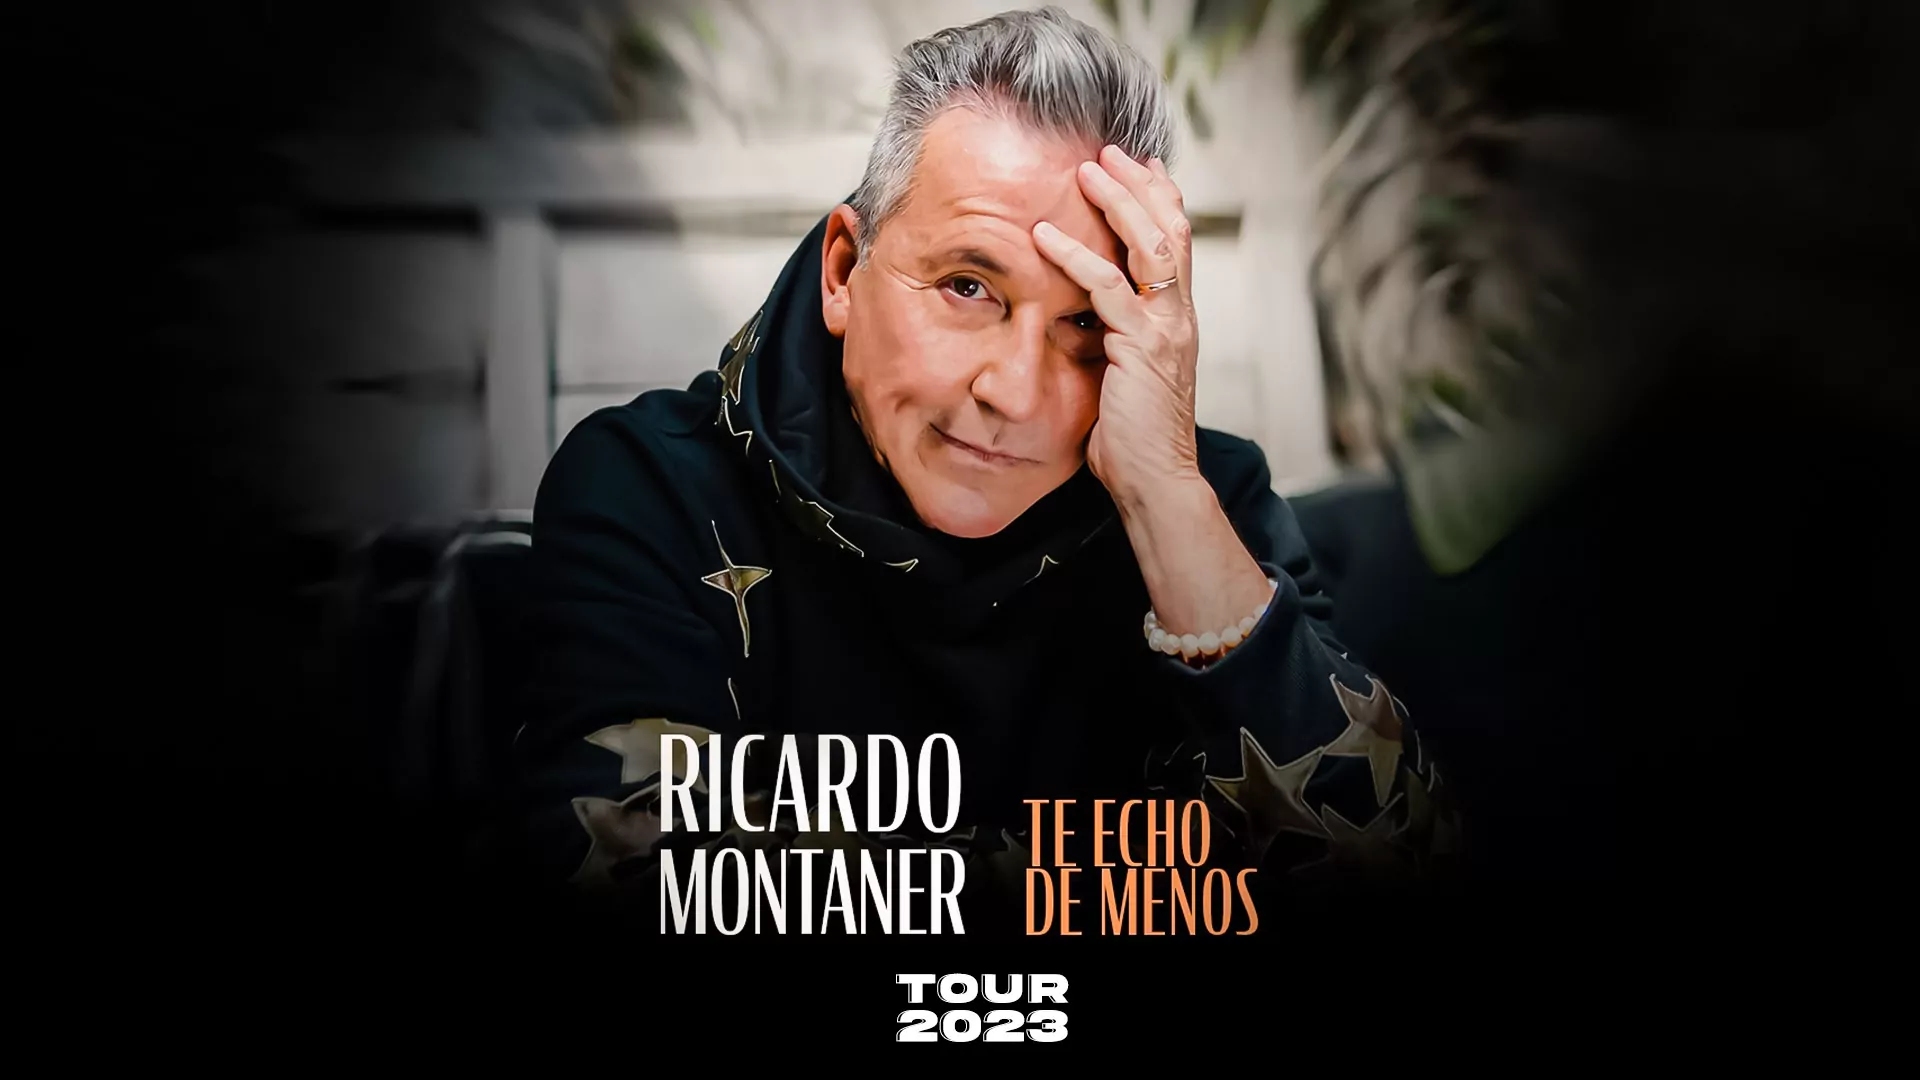 Ricardo Montaner Te echo de menos tour